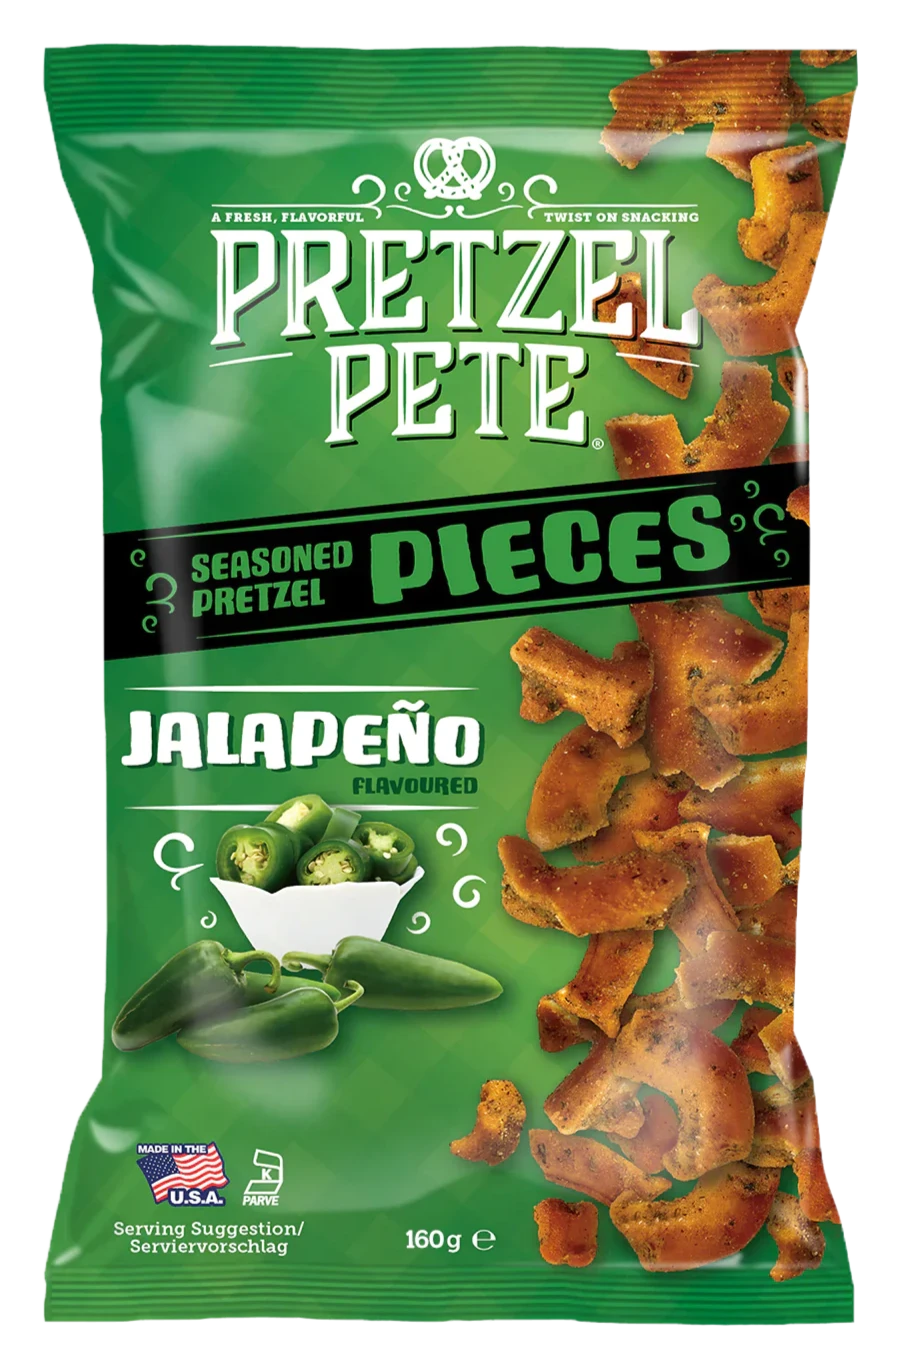 Pretzel Pete Pieces Jalapeno 8 x 160g